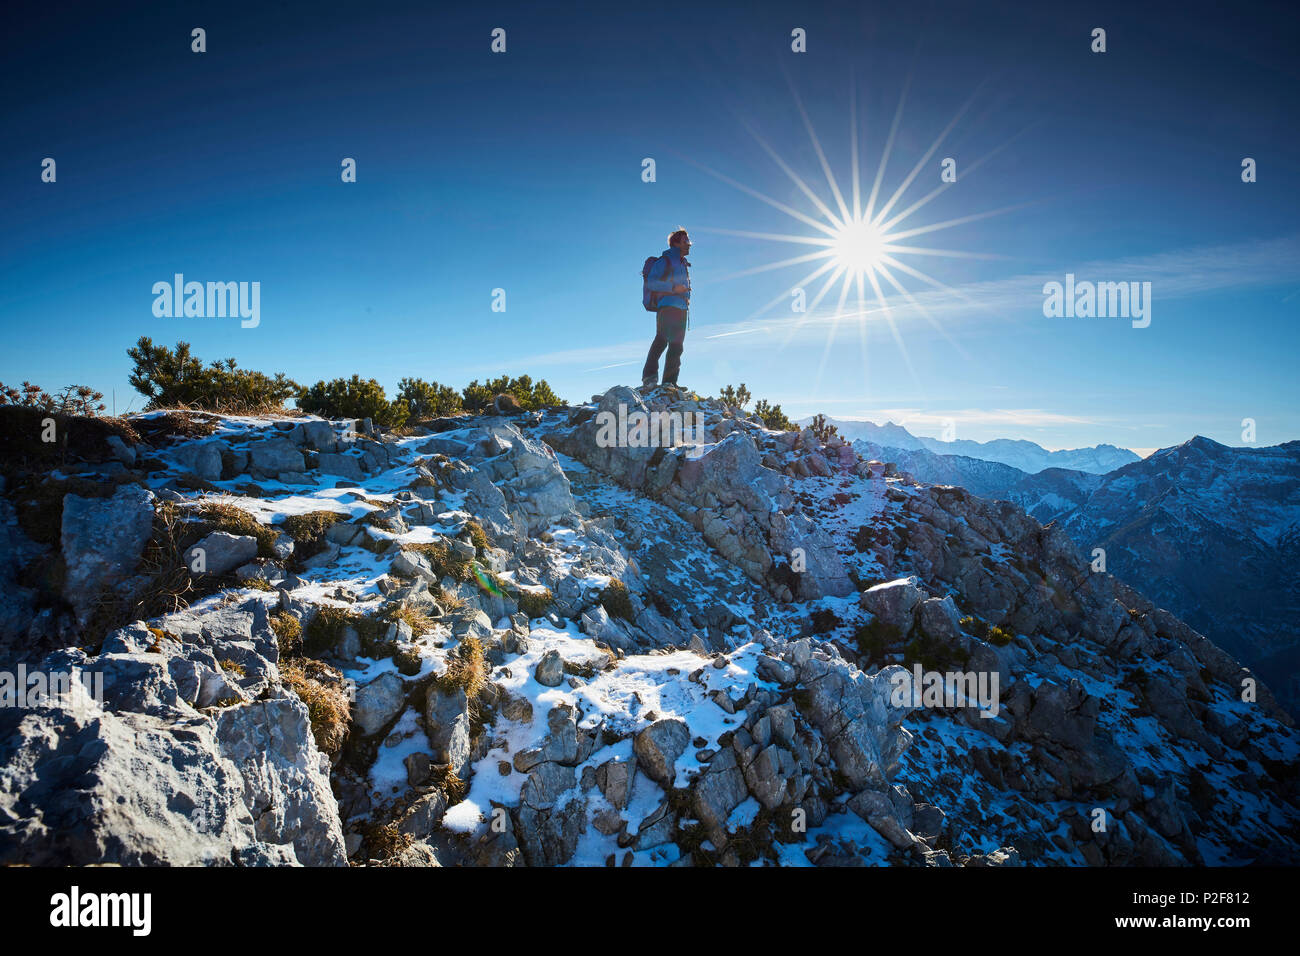 Randonneur dans la fin de l'automne, lors du sommet de l'Alpes d'Ammergau, Scheinbergspitze, Allemagne Banque D'Images